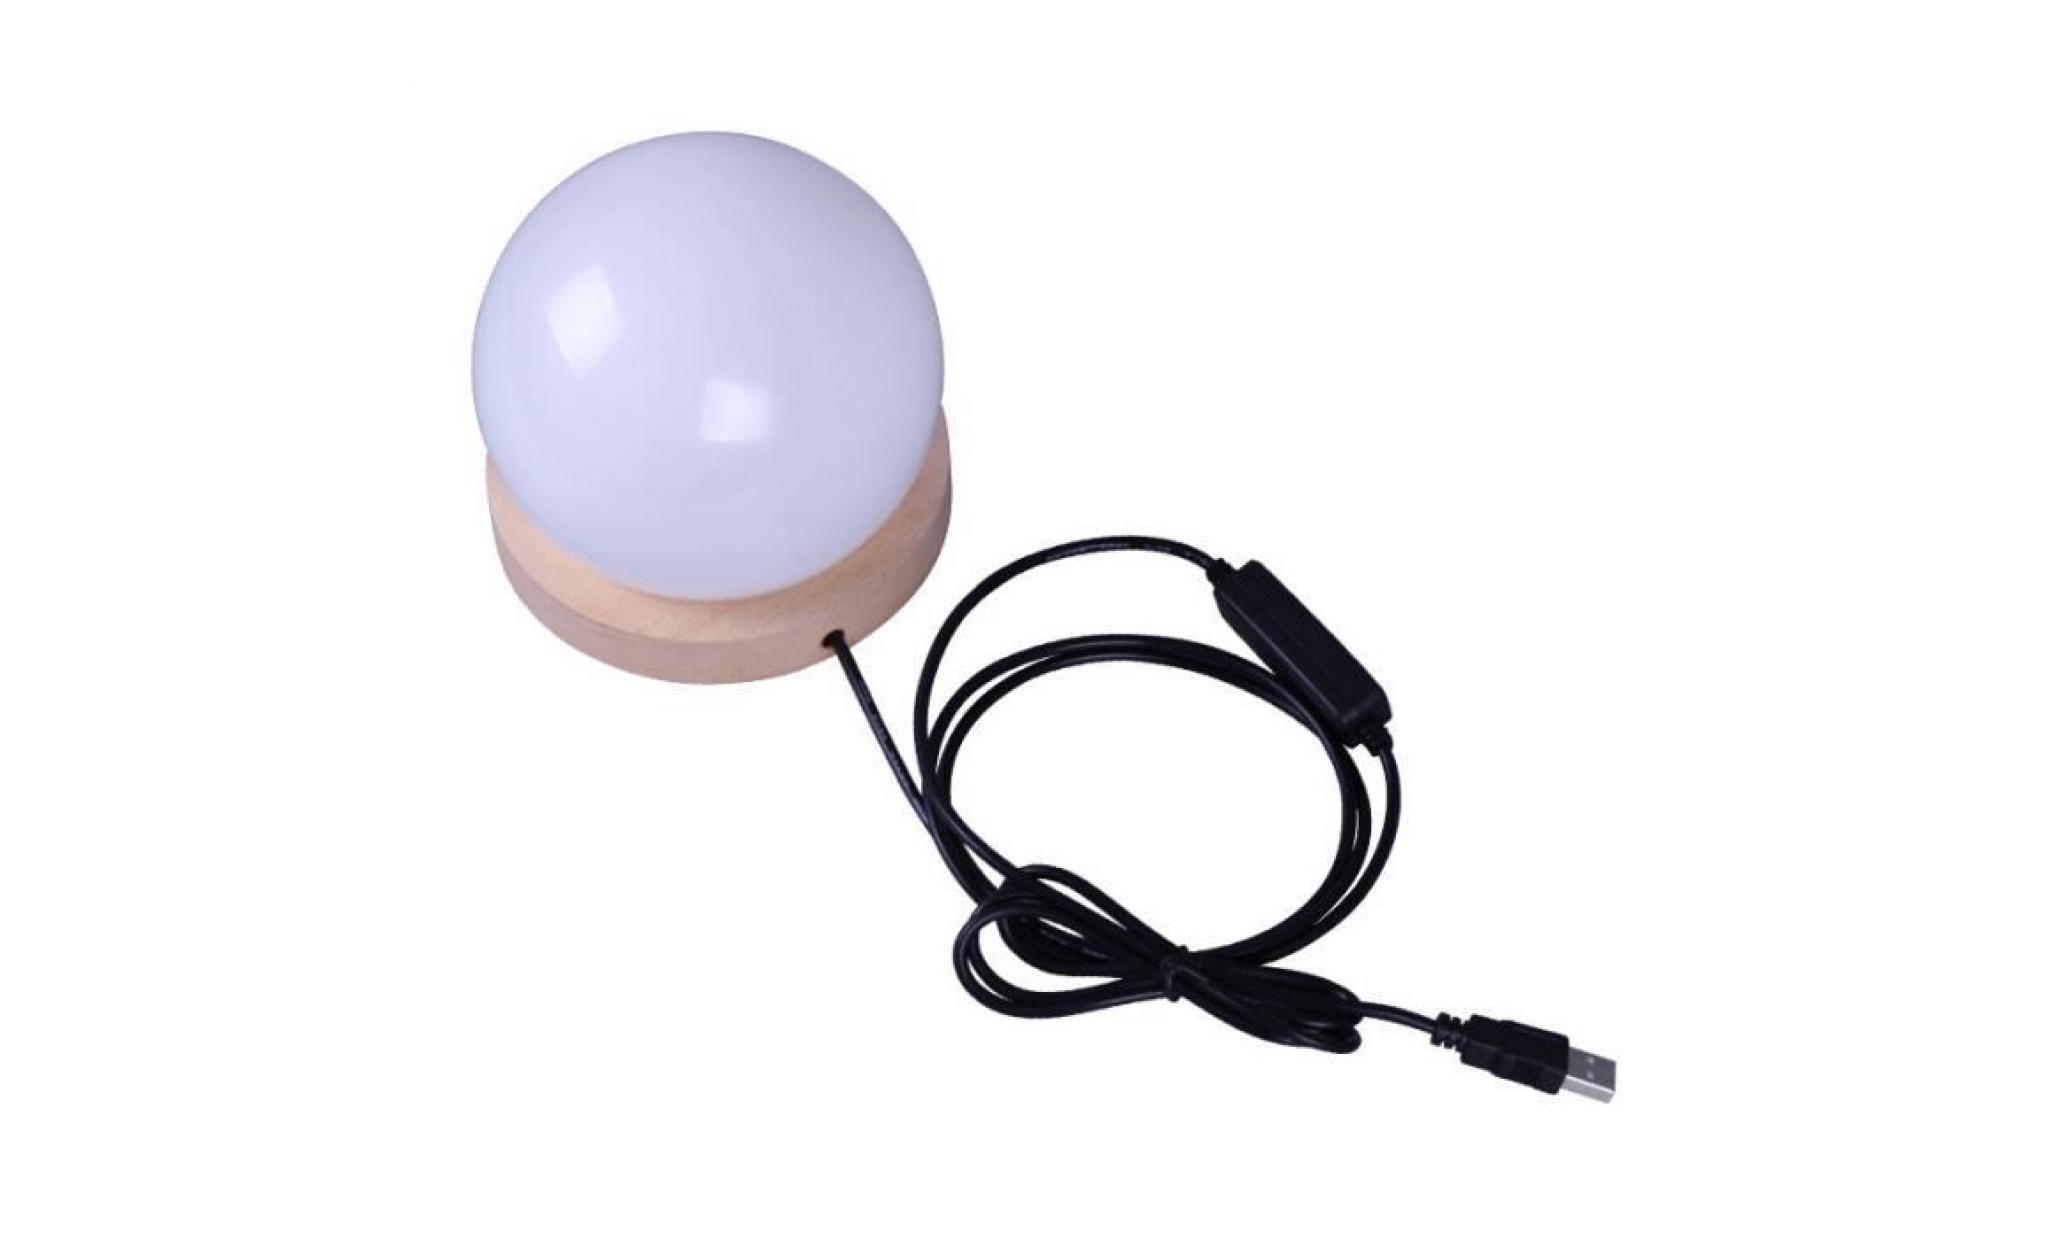 night light ball shaped usb lamp kid's gift home desk 3d led decor 10894 pas cher